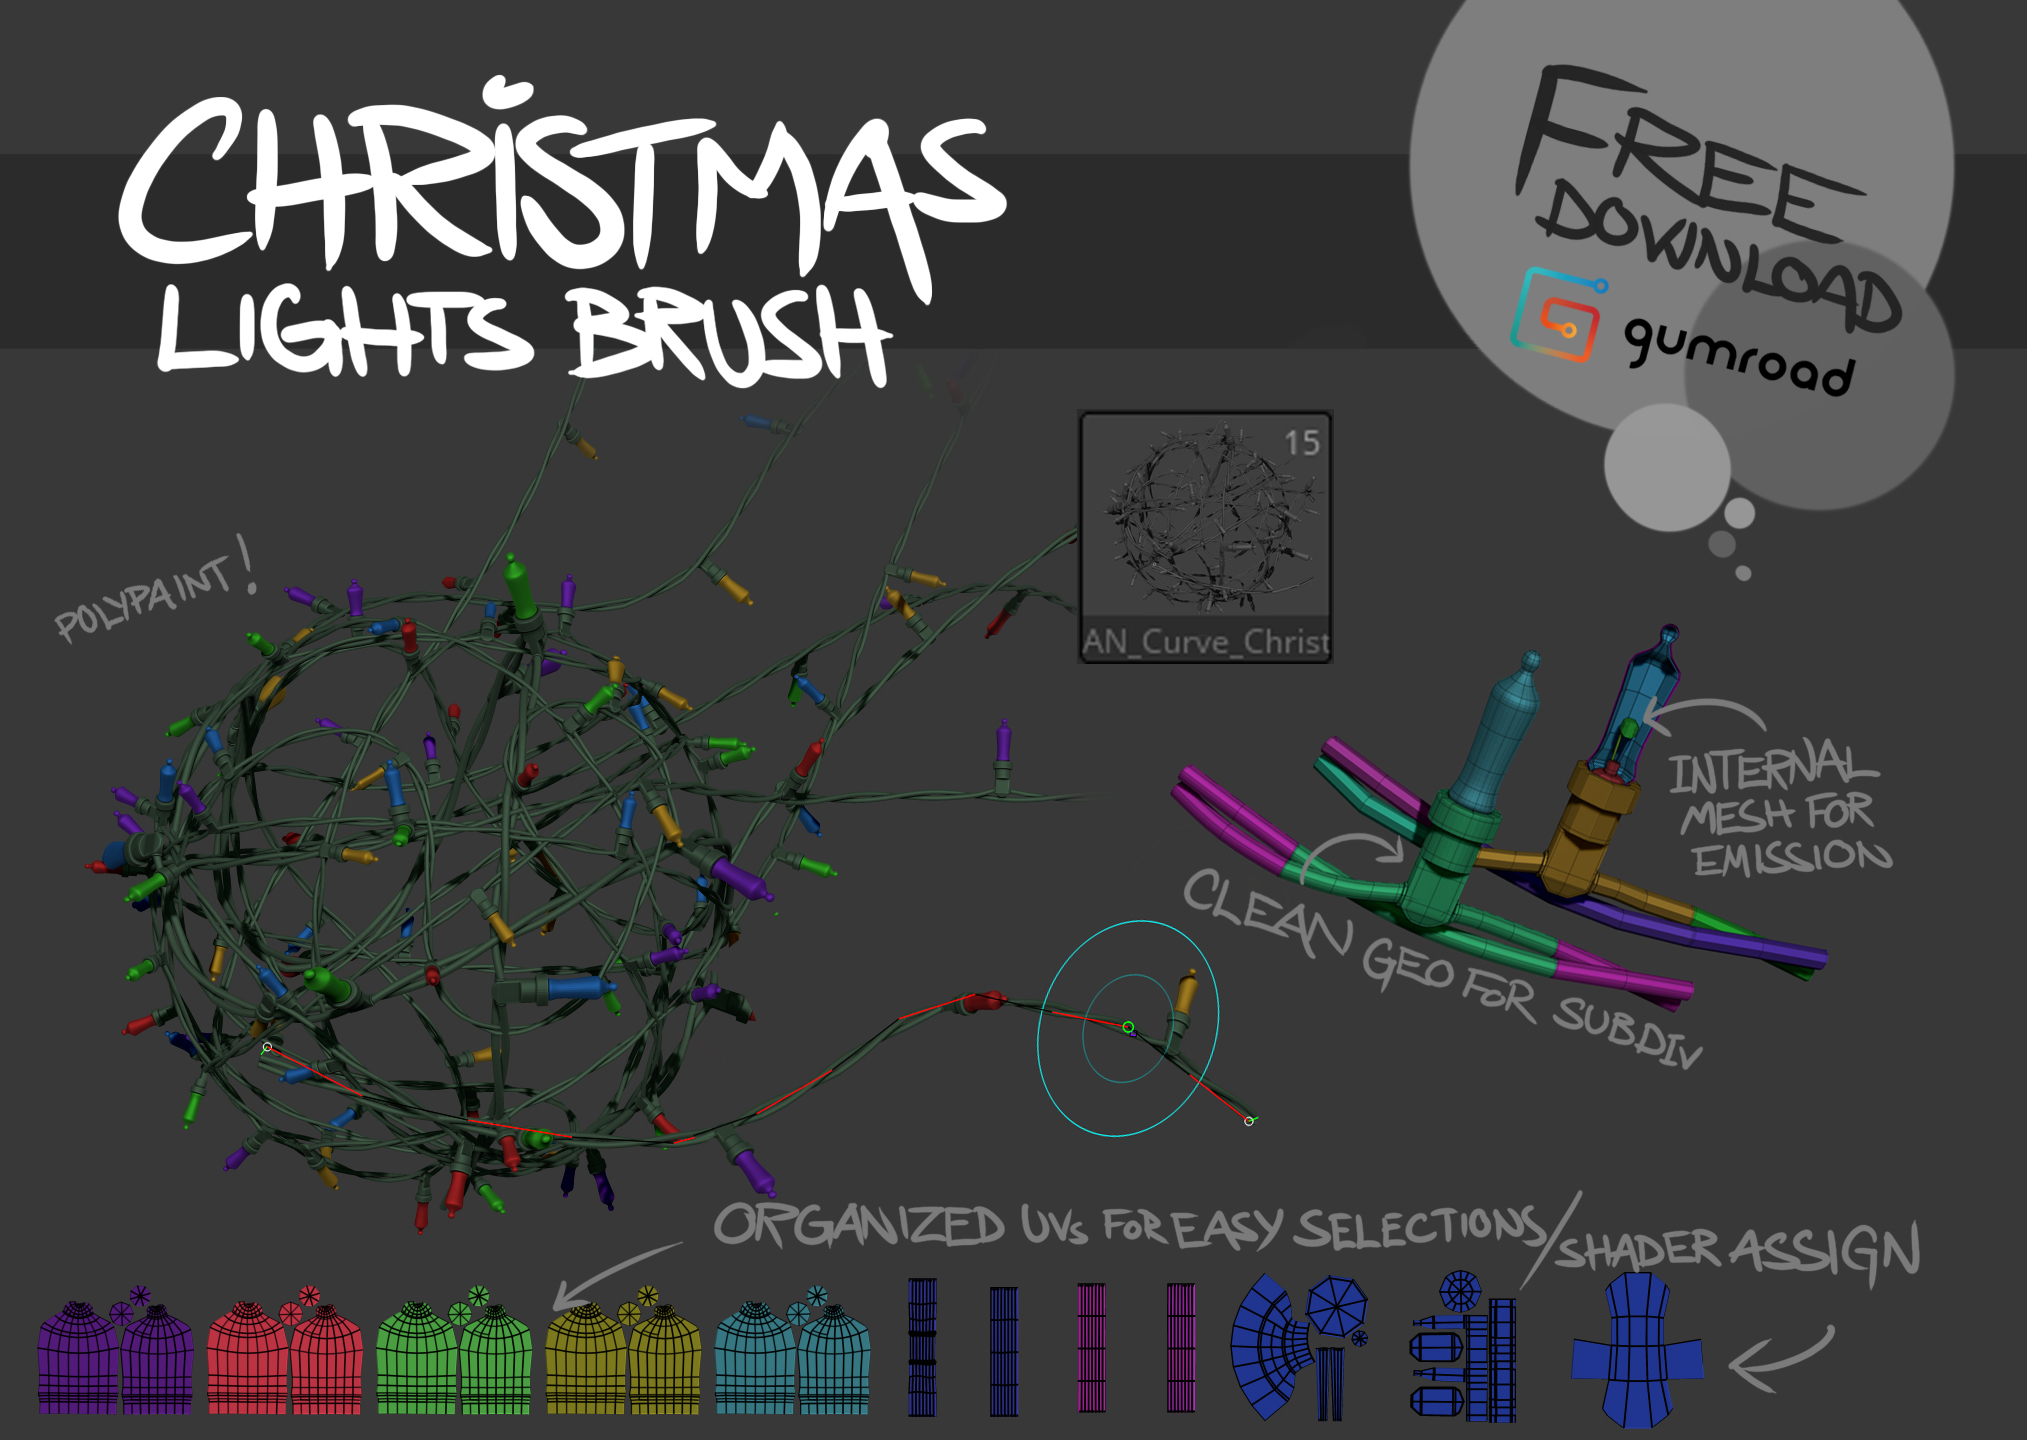 ChristmasLightsBrush_INFO.jpg